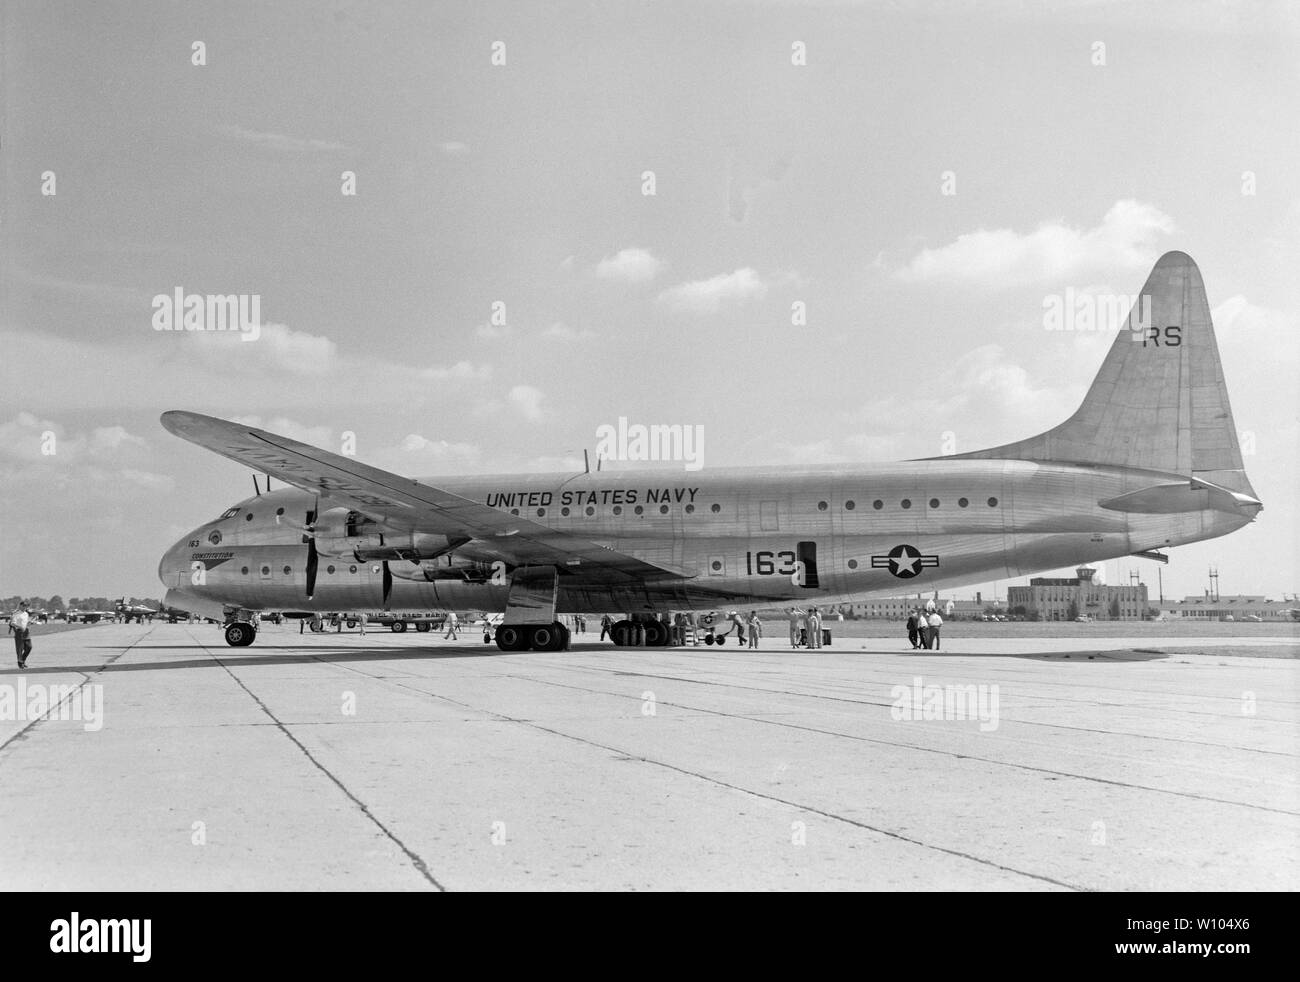 Un vintage fotografia in bianco e nero prese a Burbank, in California, Stati Uniti d'America nel 1946, mostra un Lockheed R-6V Costituzione, numero di serie 85163, della marina degli Stati Uniti. Solo due di questi aerei non sono mai state costruite, e questo è stato infine demolito negli anni settanta. Foto Stock